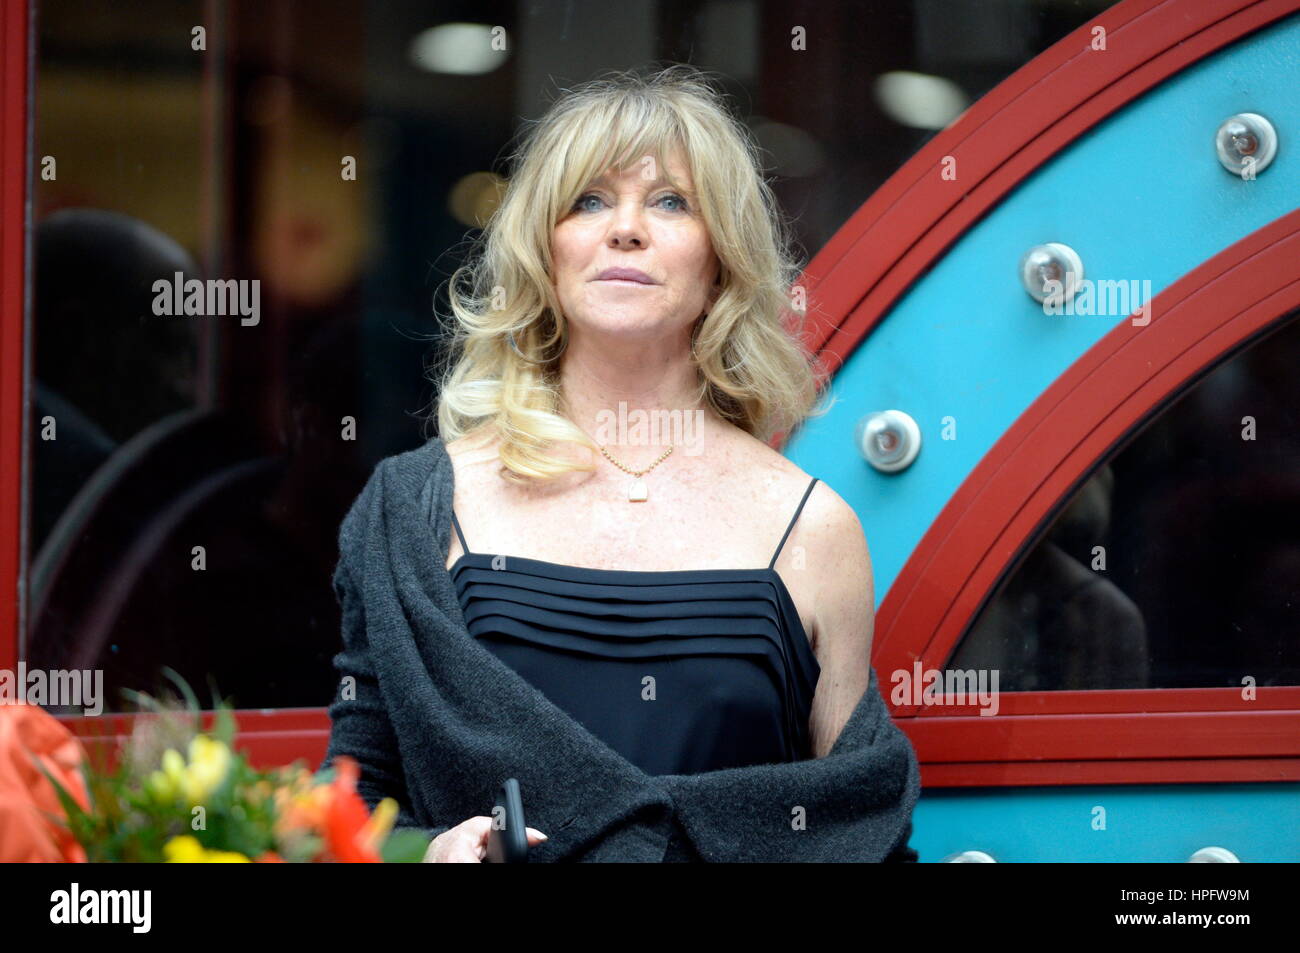 Viena, Austria. 22 Feb, 2017. Goldie Hawn estrella cinematográfica estadounidense posa para las fotos como el baile de ópera invitado de honor en 2017, en una conferencia de prensa en Viena, Austria, el 22 de febrero de 2017. © Franz Perc/Alamy Live News Foto de stock